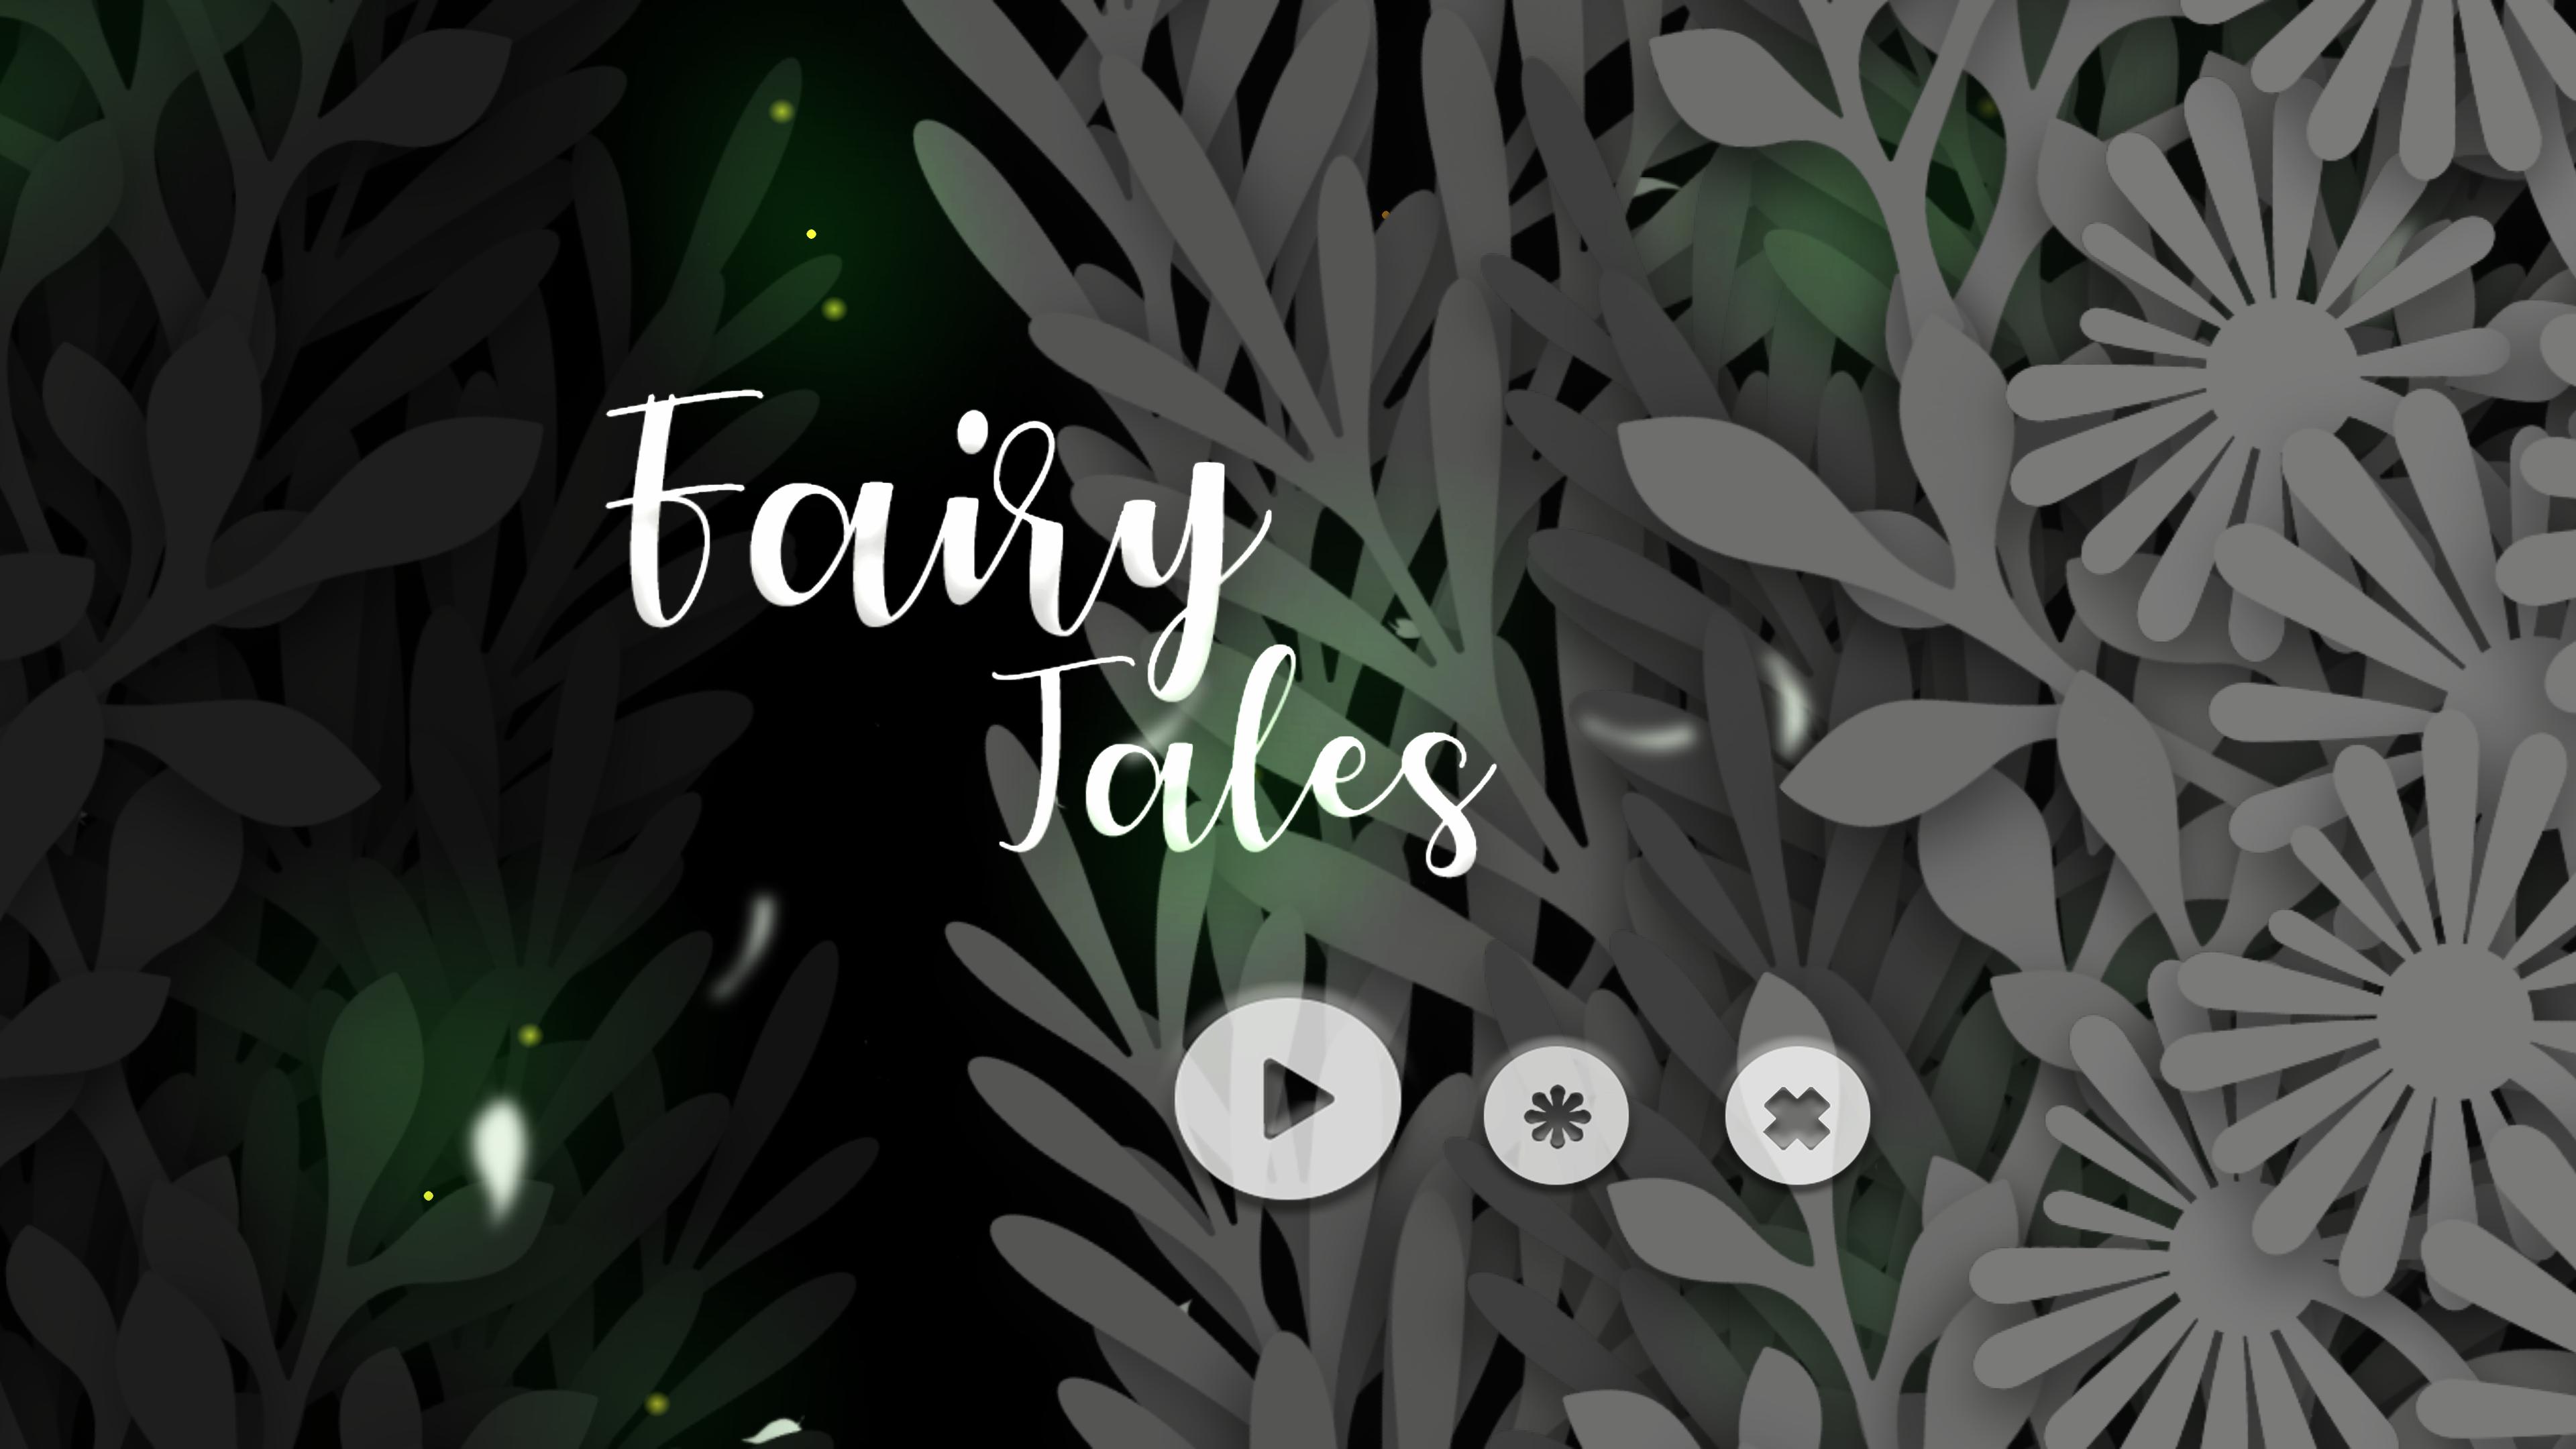 Fairy Tales UI